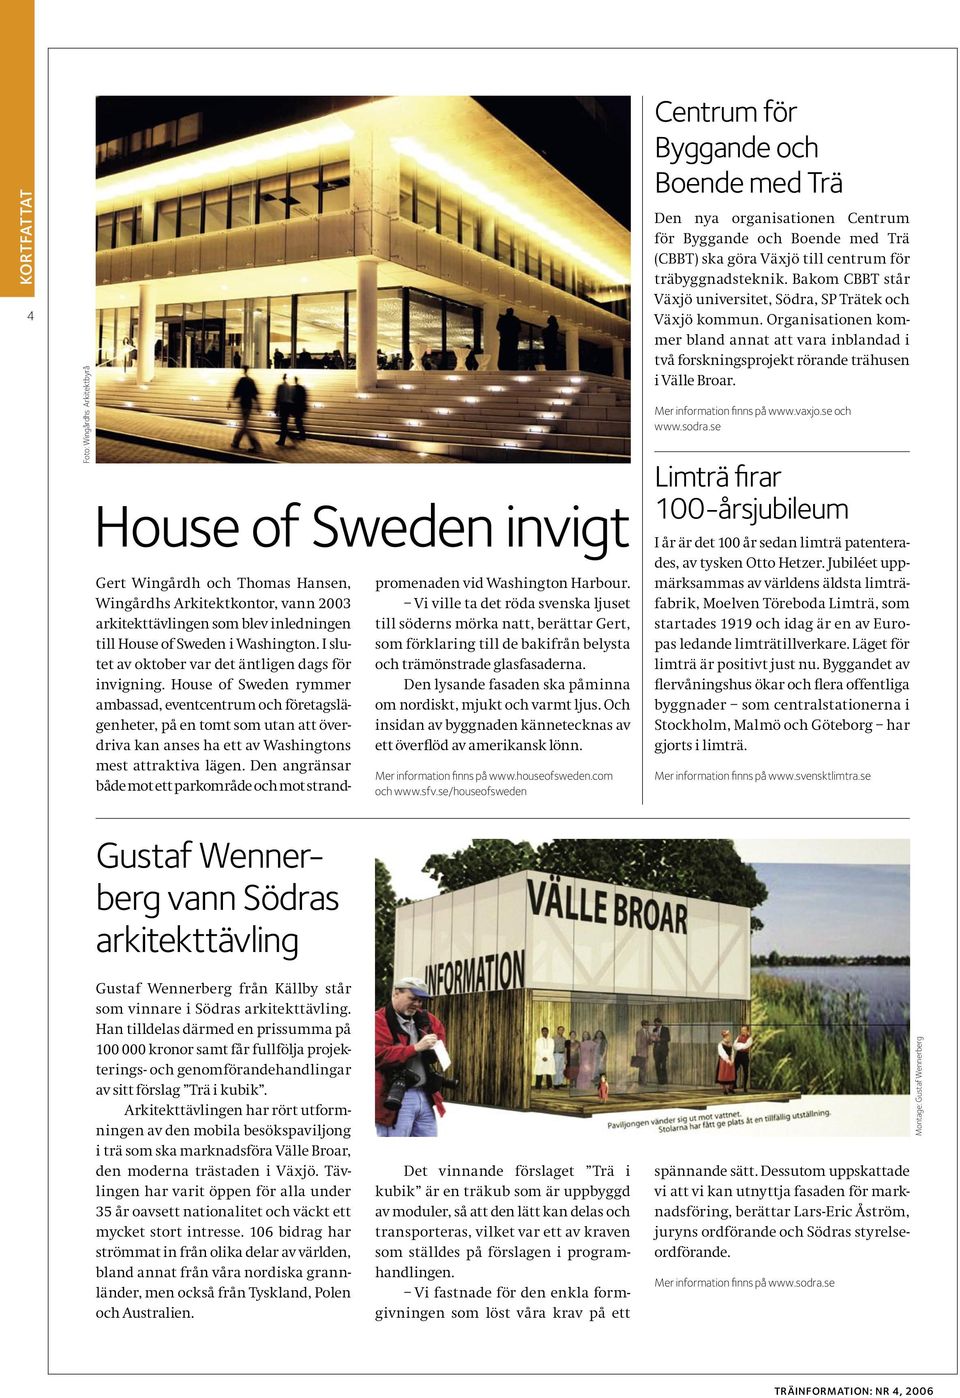 House of Sweden rymmer ambassad, eventcentrum och företagslägenheter, på en tomt som utan att överdriva kan anses ha ett av Washingtons mest attraktiva lägen.